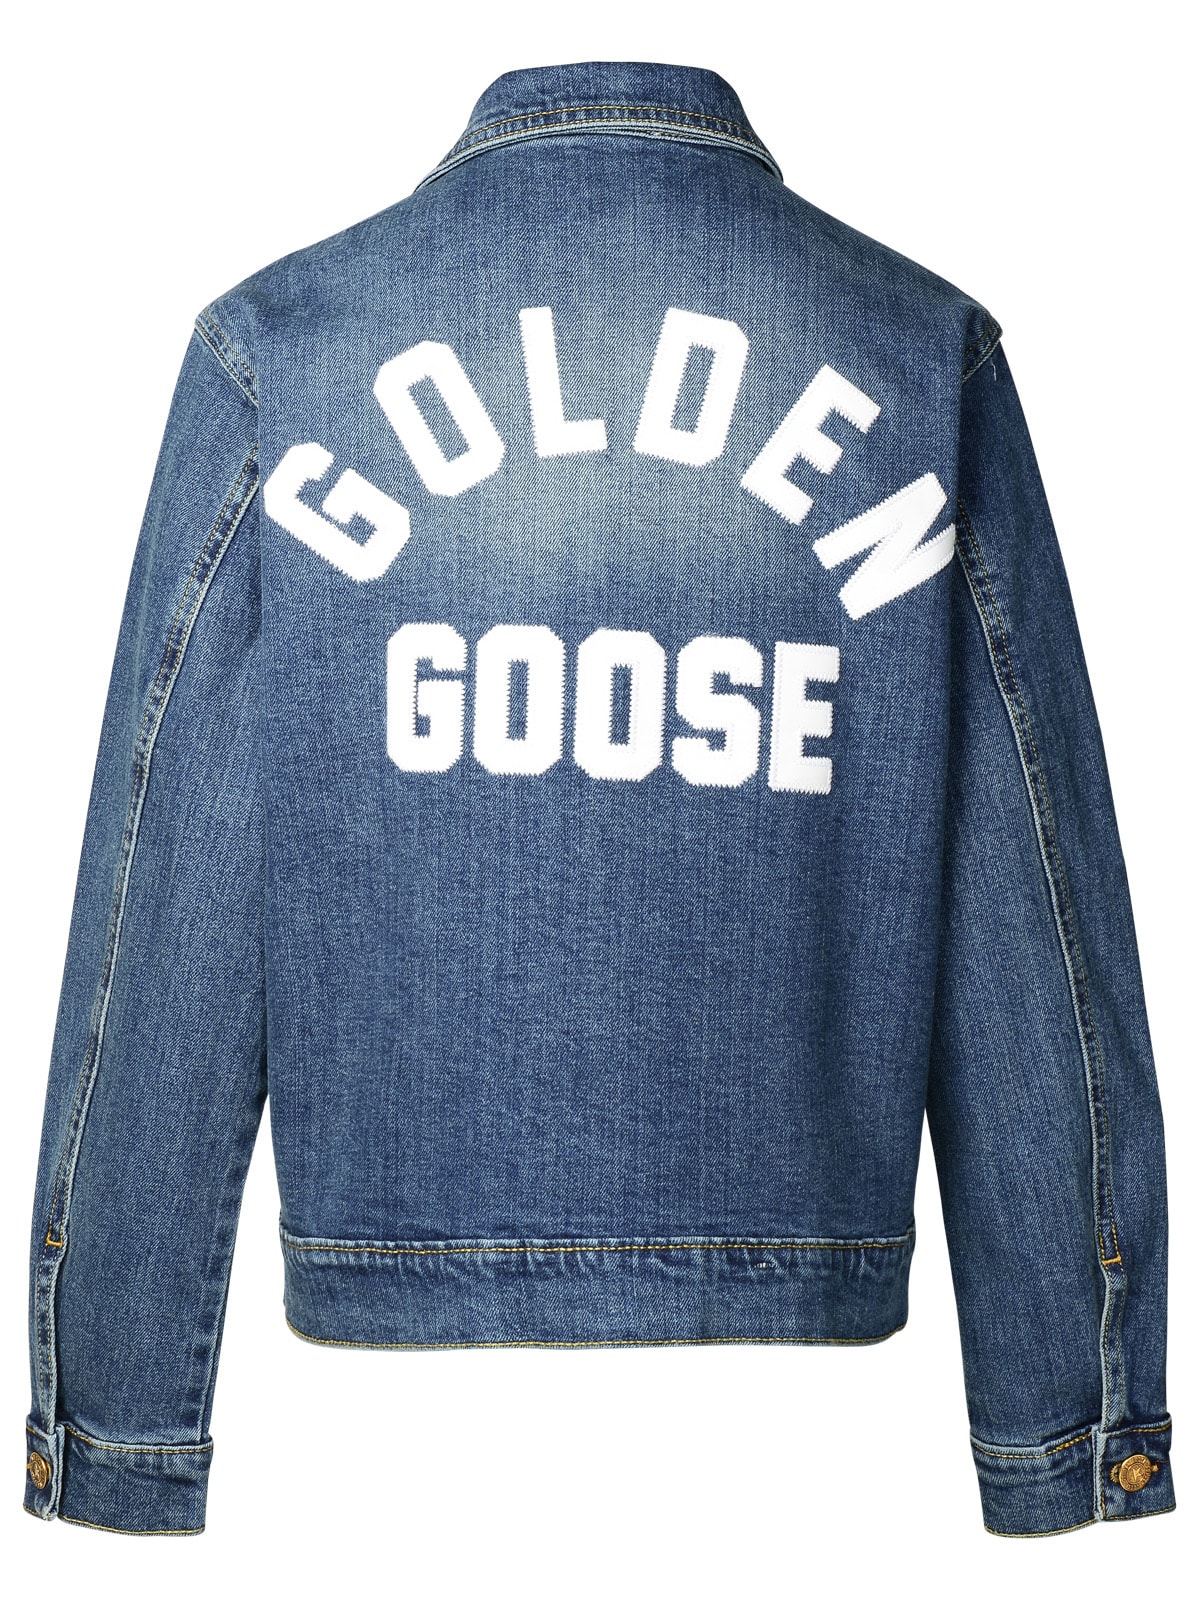 Shop Golden Goose Blue Denim Jacket